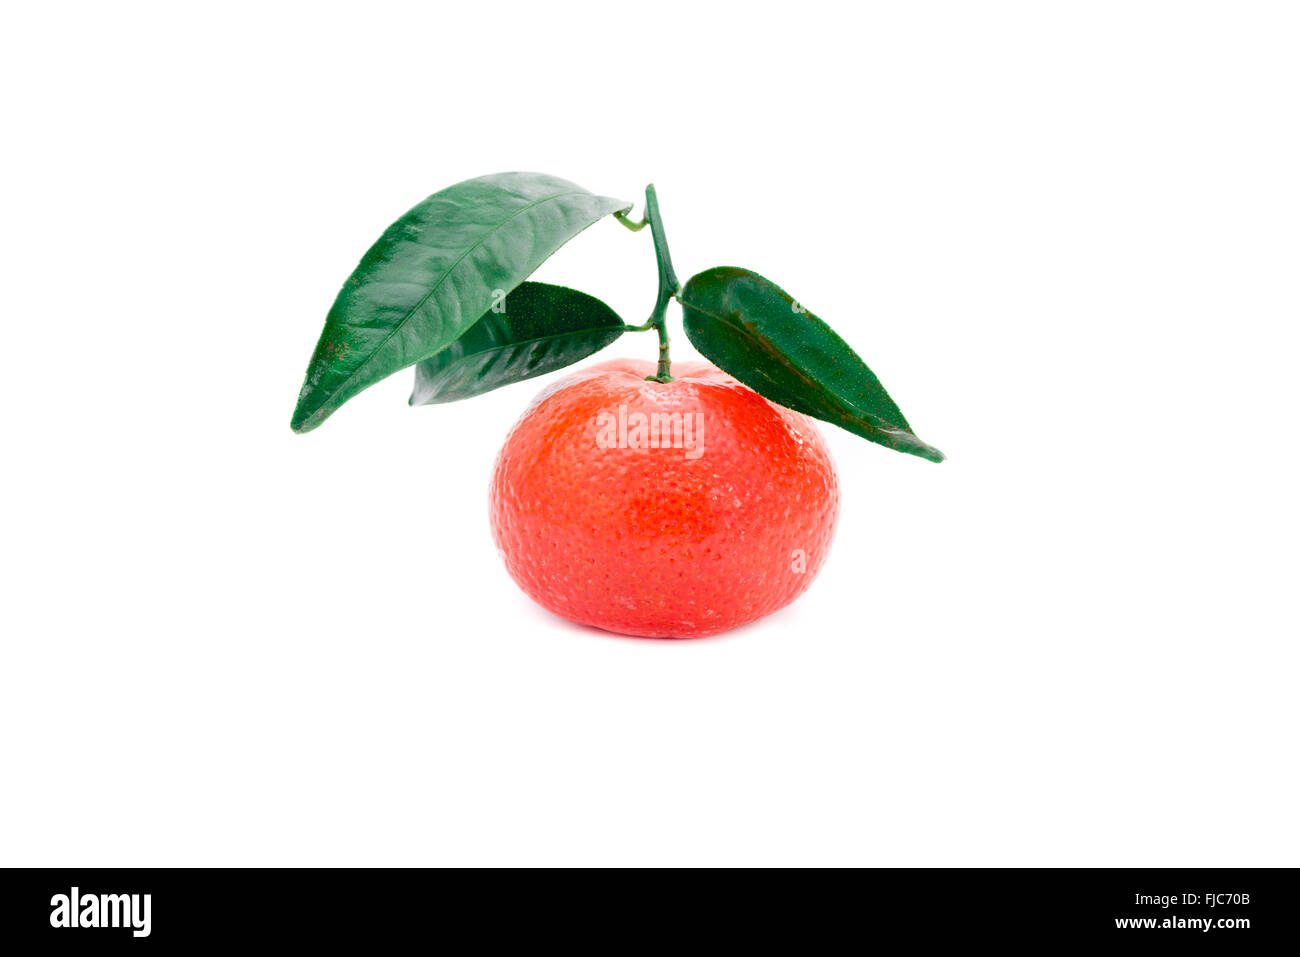 Mandarina fresca con tallos y hojas verdes Foto de stock